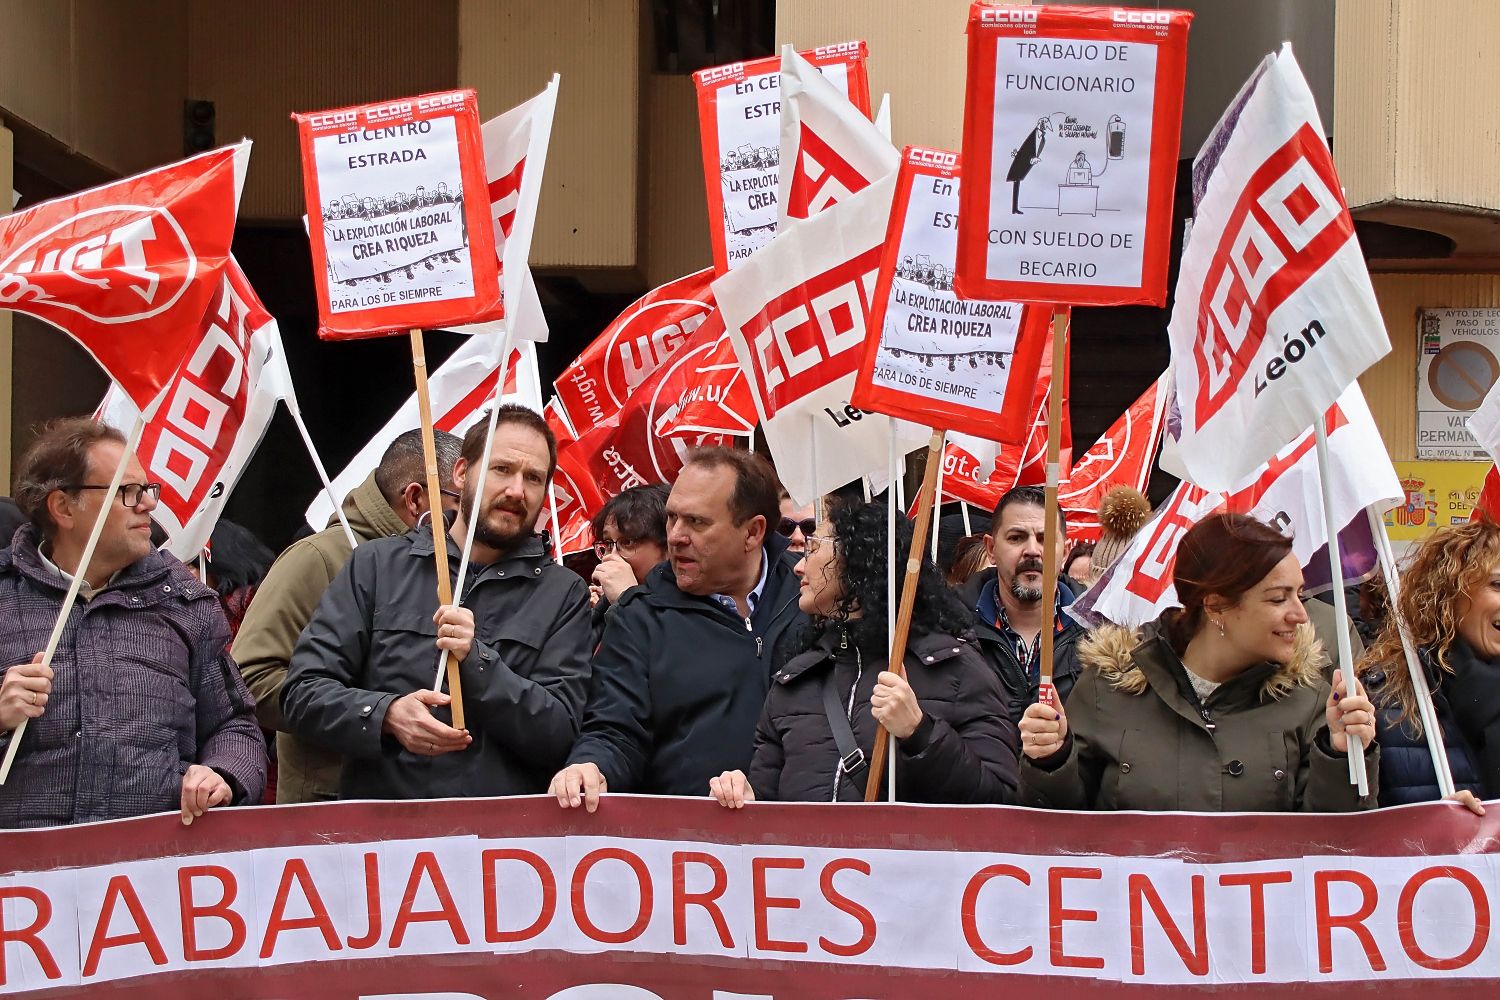 La plantilla del Centro Estrada de León critica que la Administración se desvincule del conflicto y permita el incumplimiento del contrato